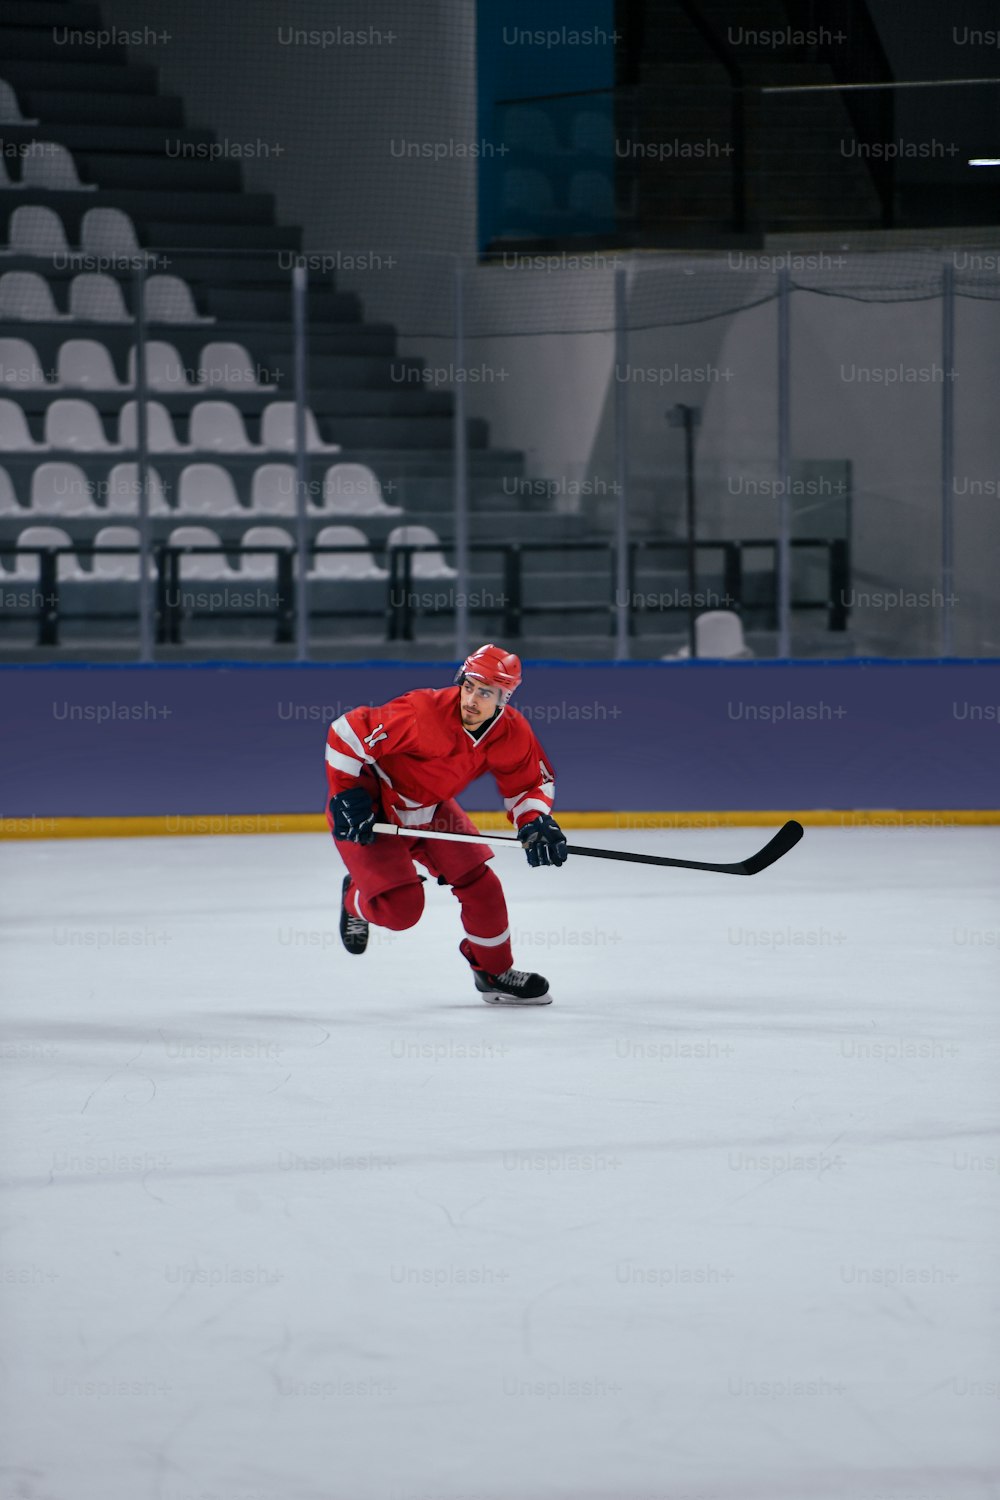 Un homme en uniforme de hockey rouge jouant sur une patinoire